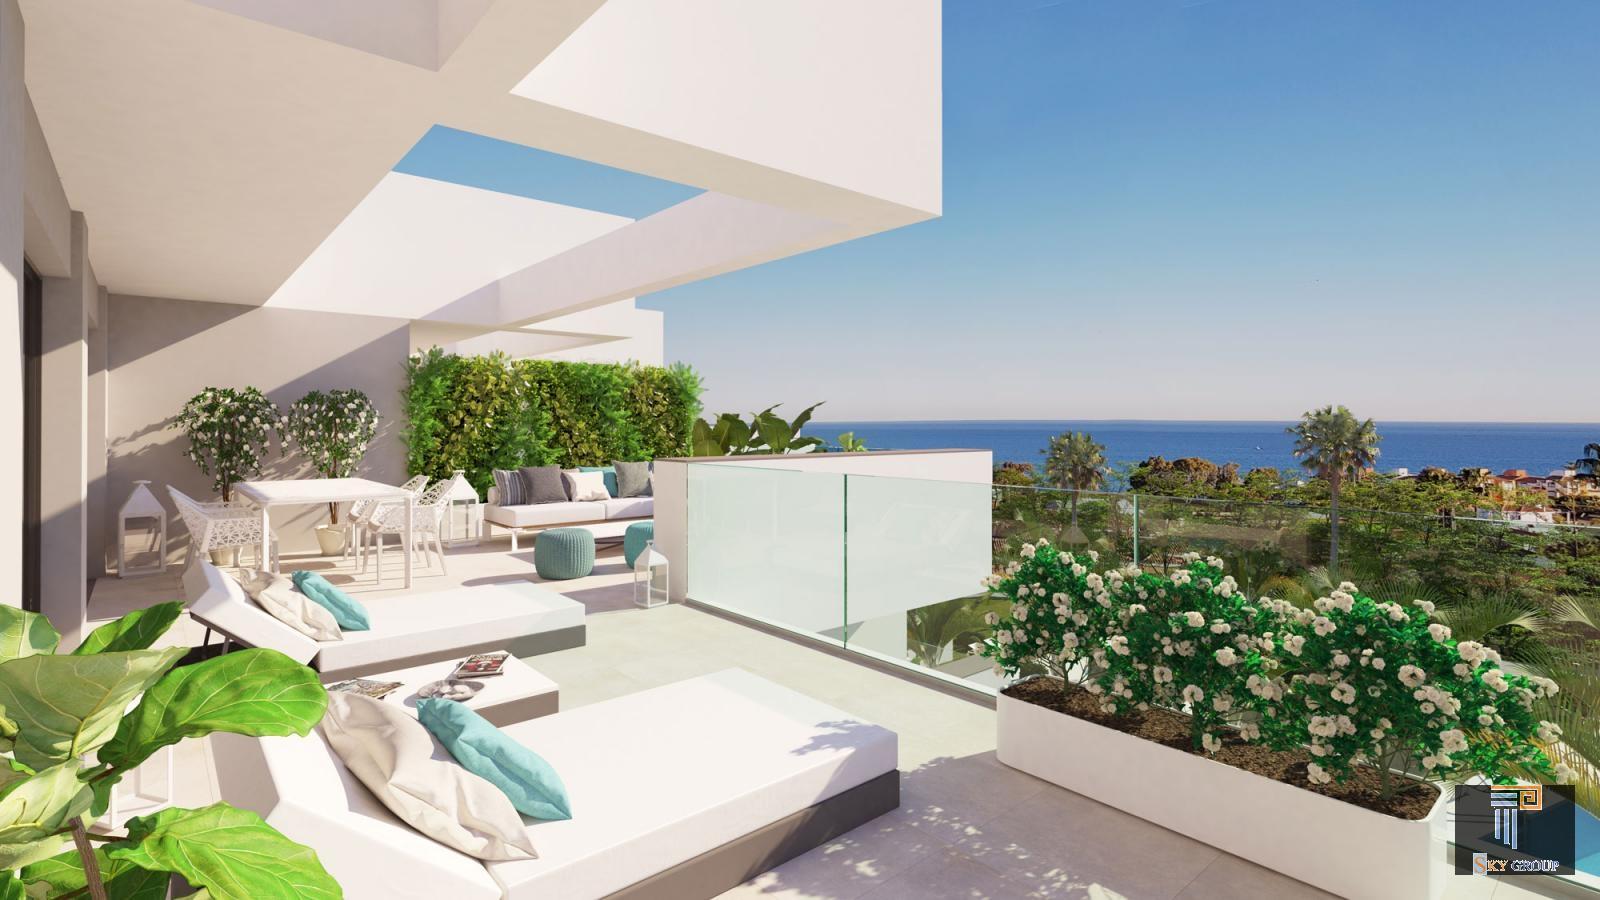 Luxury Apartment for sale in Manilva Costa (Manilva), 199.500 €